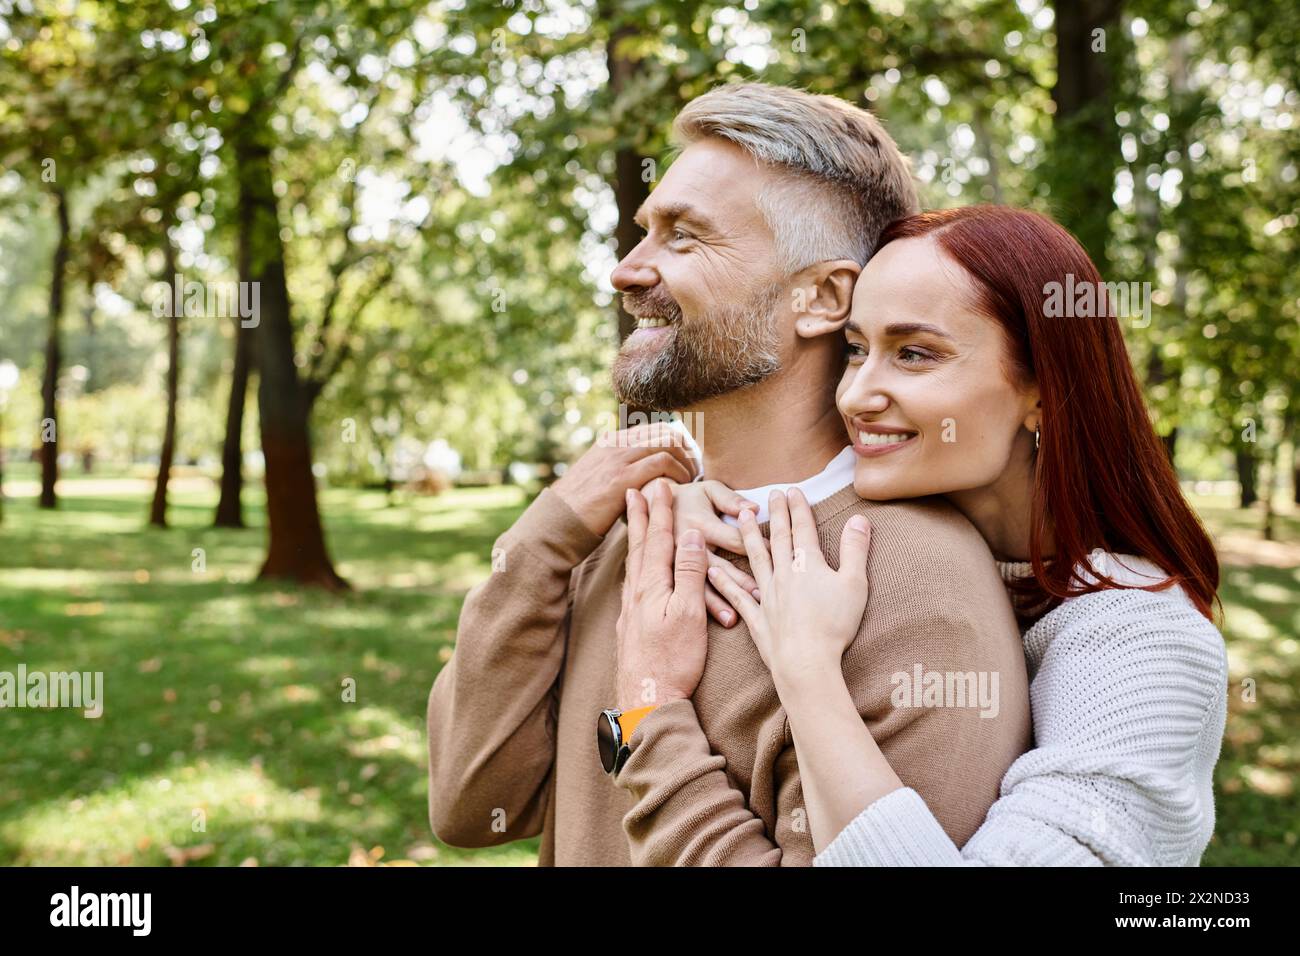 Ein Mann hält eine Frau zärtlich in einem Park, umgeben von Grün und Ruhe. Stockfoto